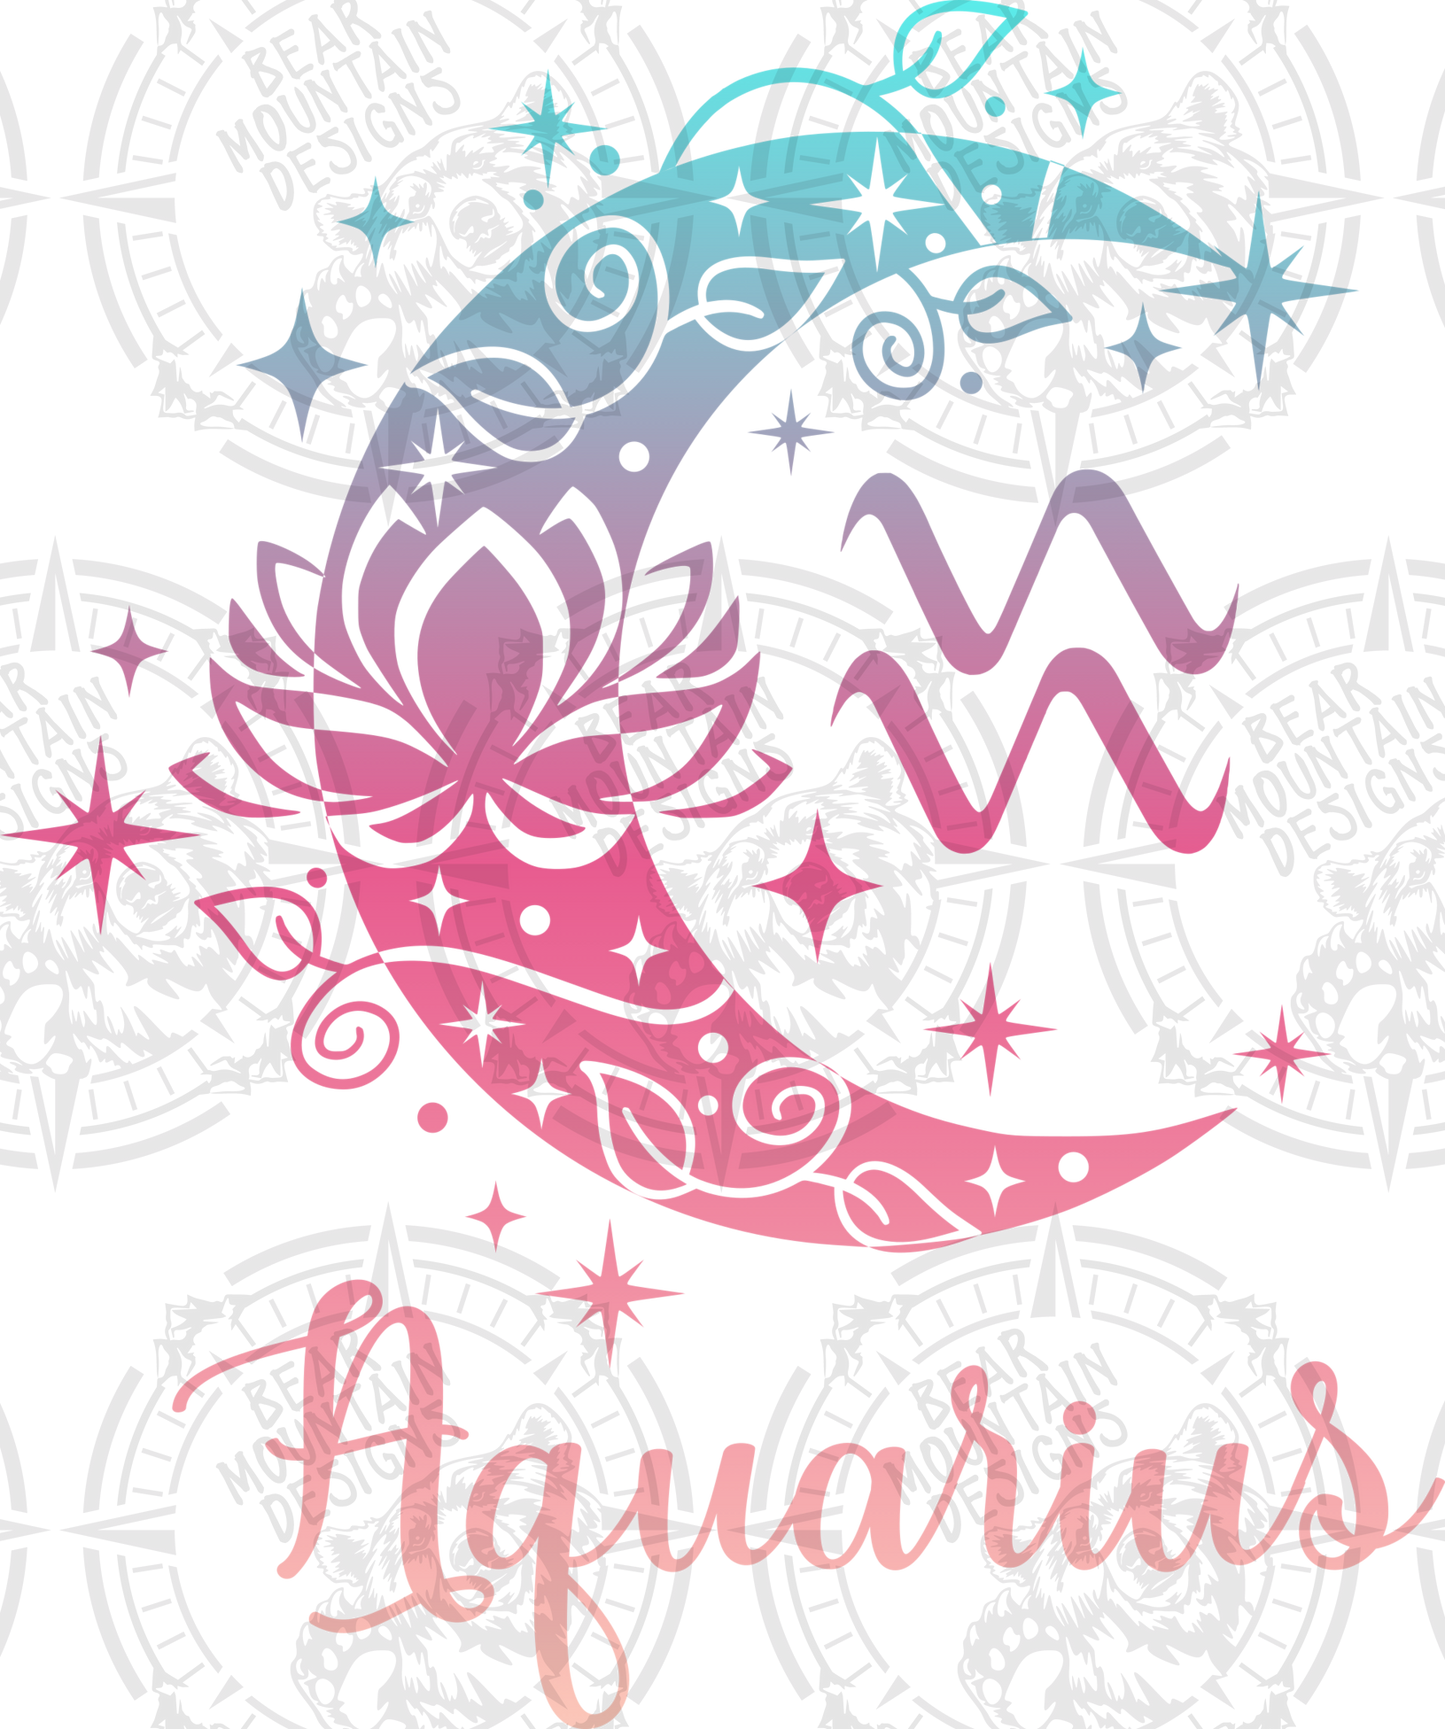 Aquarius - 17